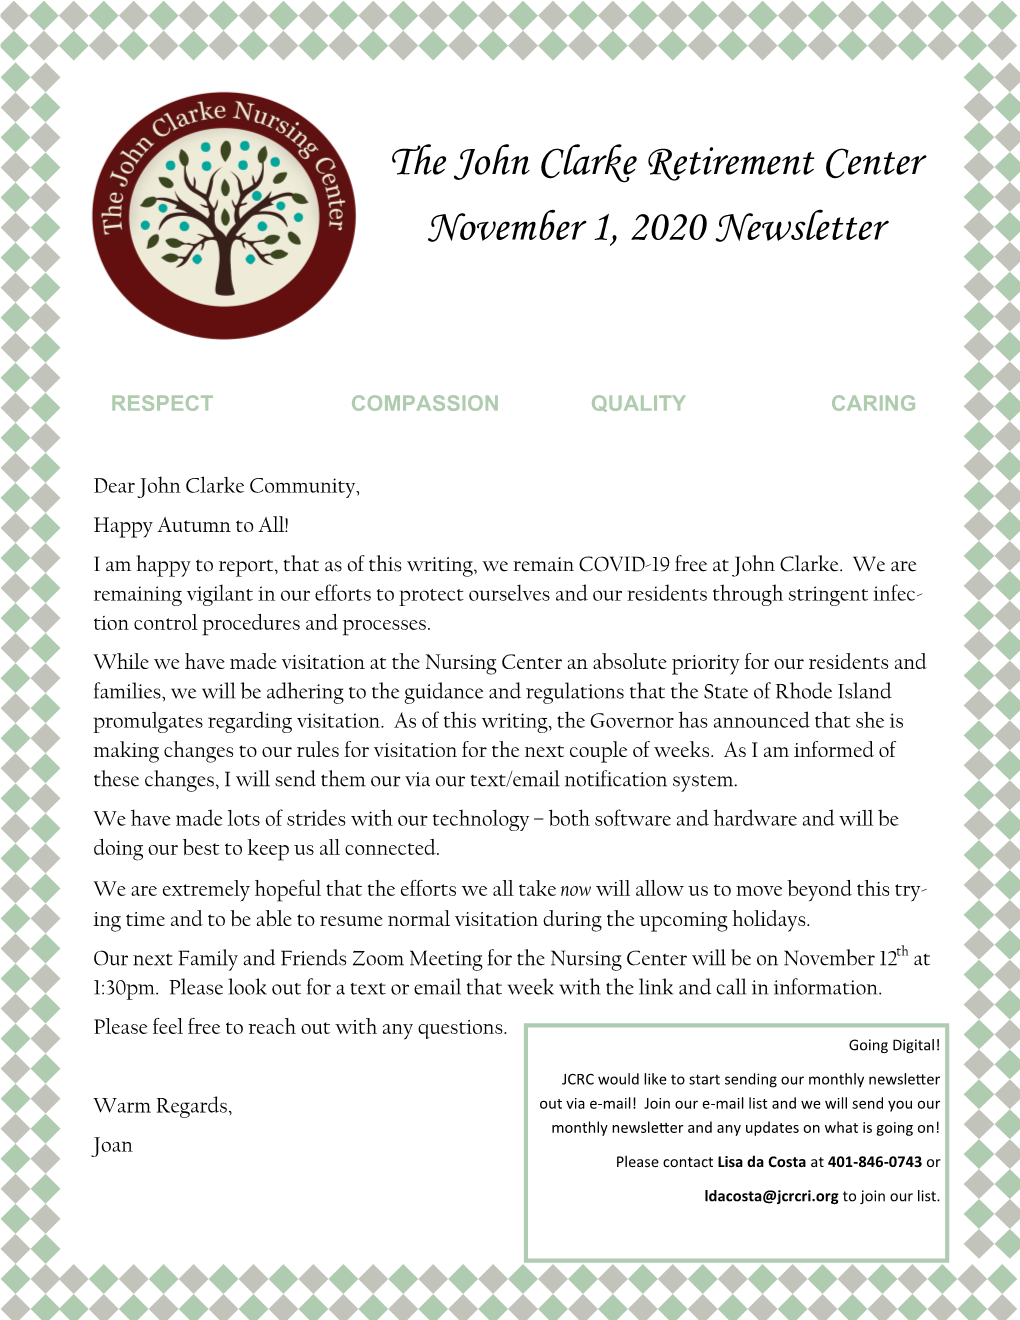 The John Clarke Retirement Center November 1, 2020 Newsletter